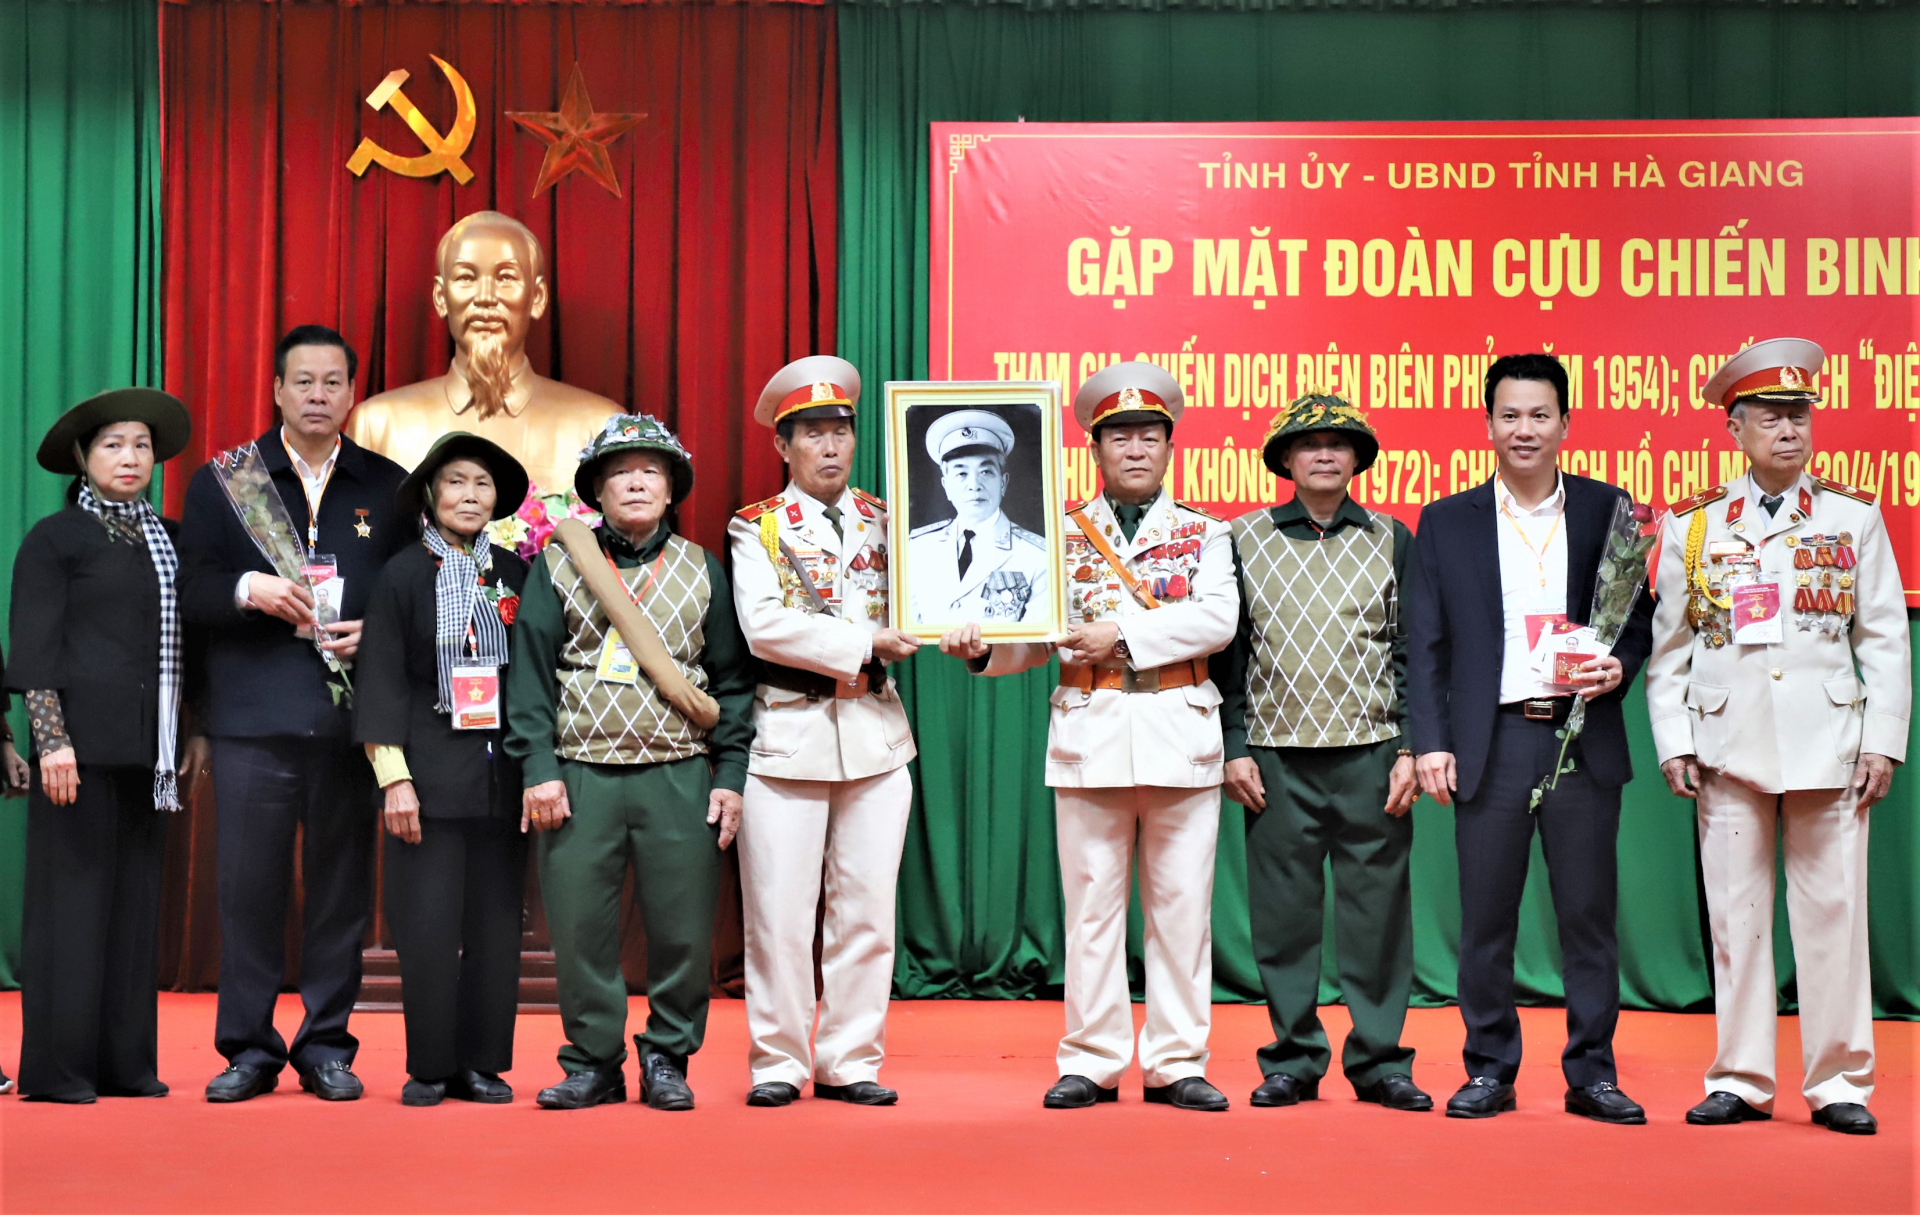 Đoàn CCB 3 chiến dịch lịch sử Việt Nam trao tặng Kỷ niệm chương cho các đồng chí lãnh đạo tỉnh.